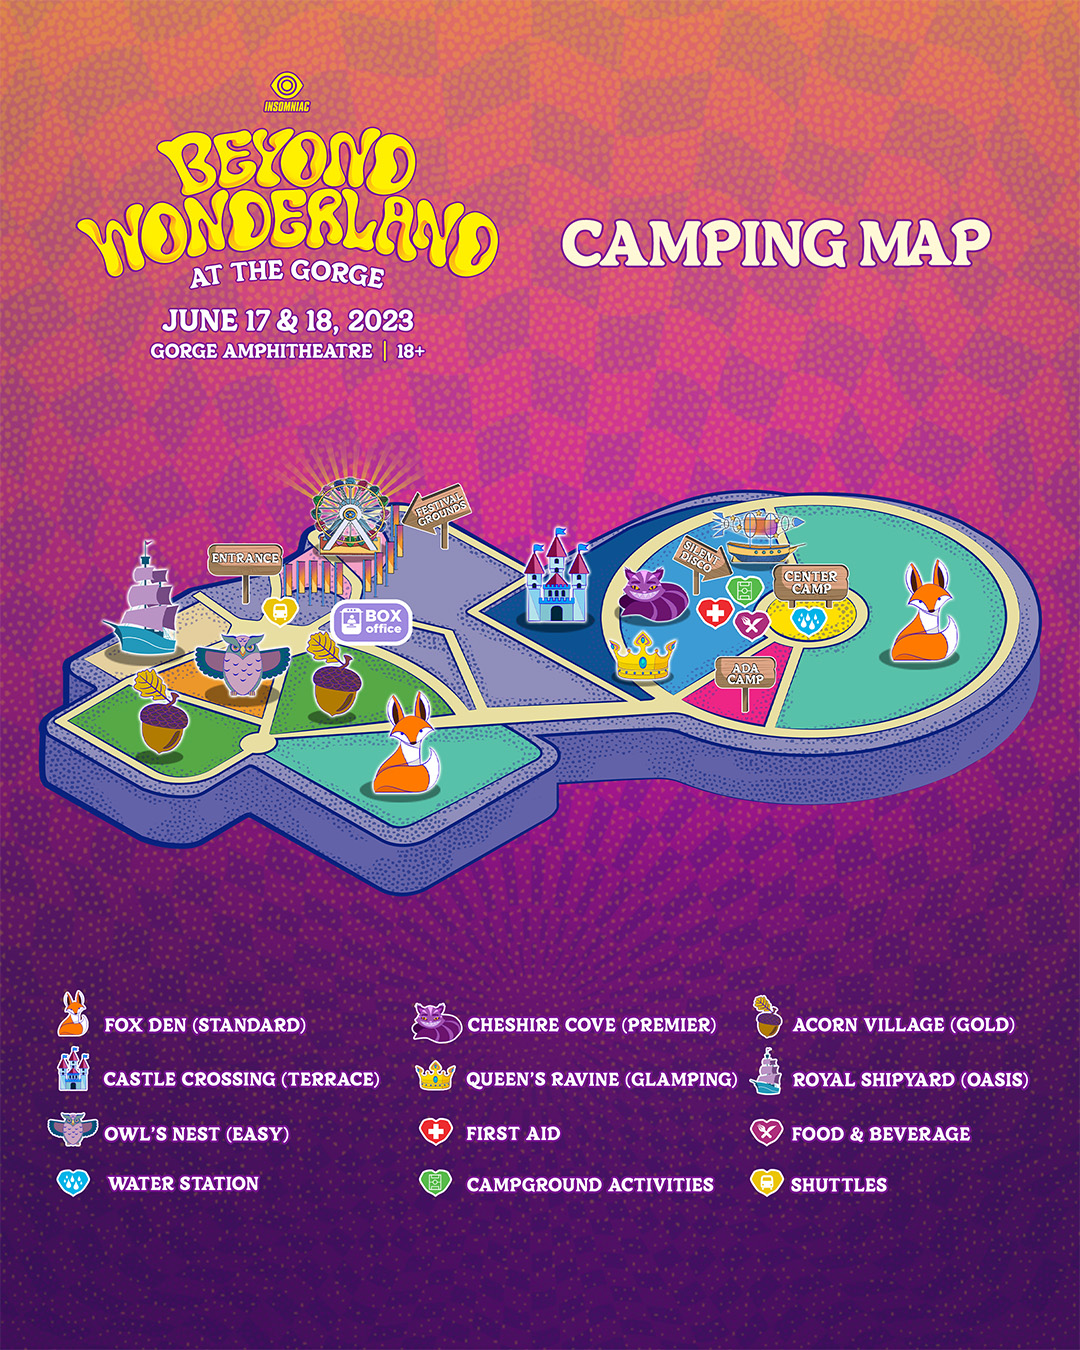 Beyond Wonderland Camping Map 2023